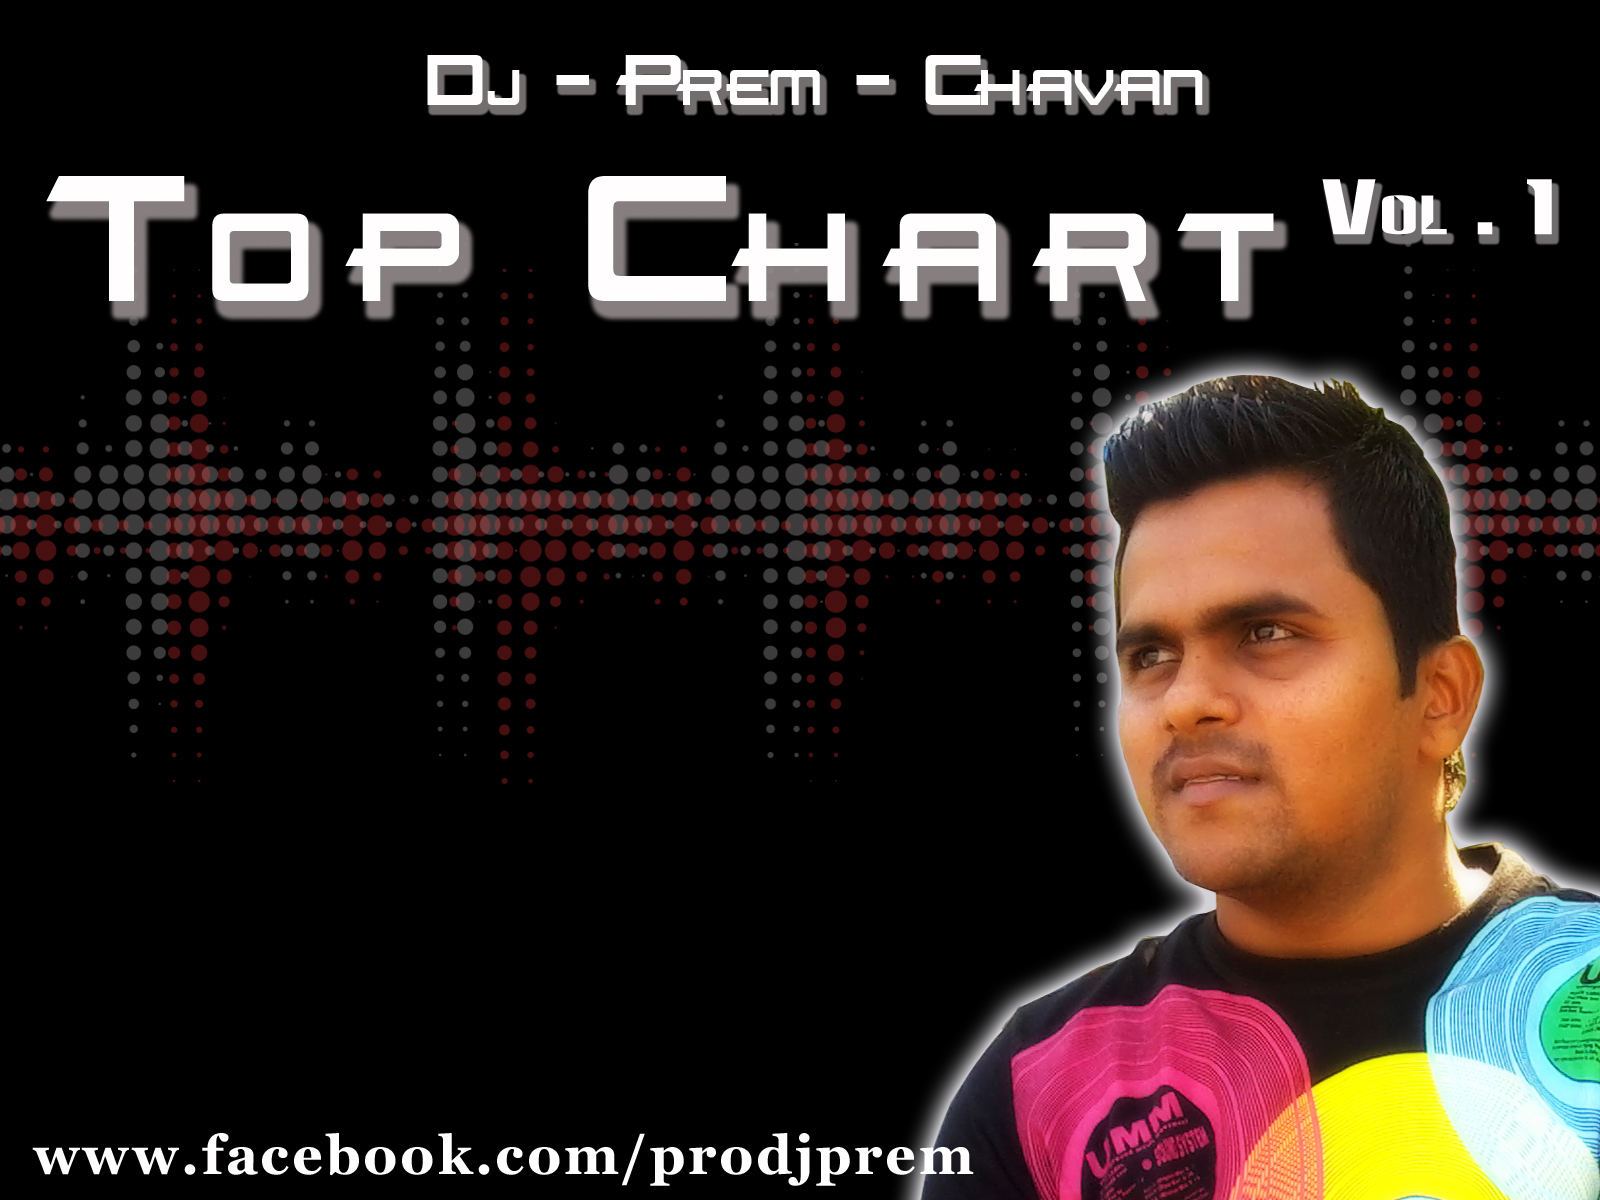 DJ Prem Chavan - Top Chart Vol.1 Front+New